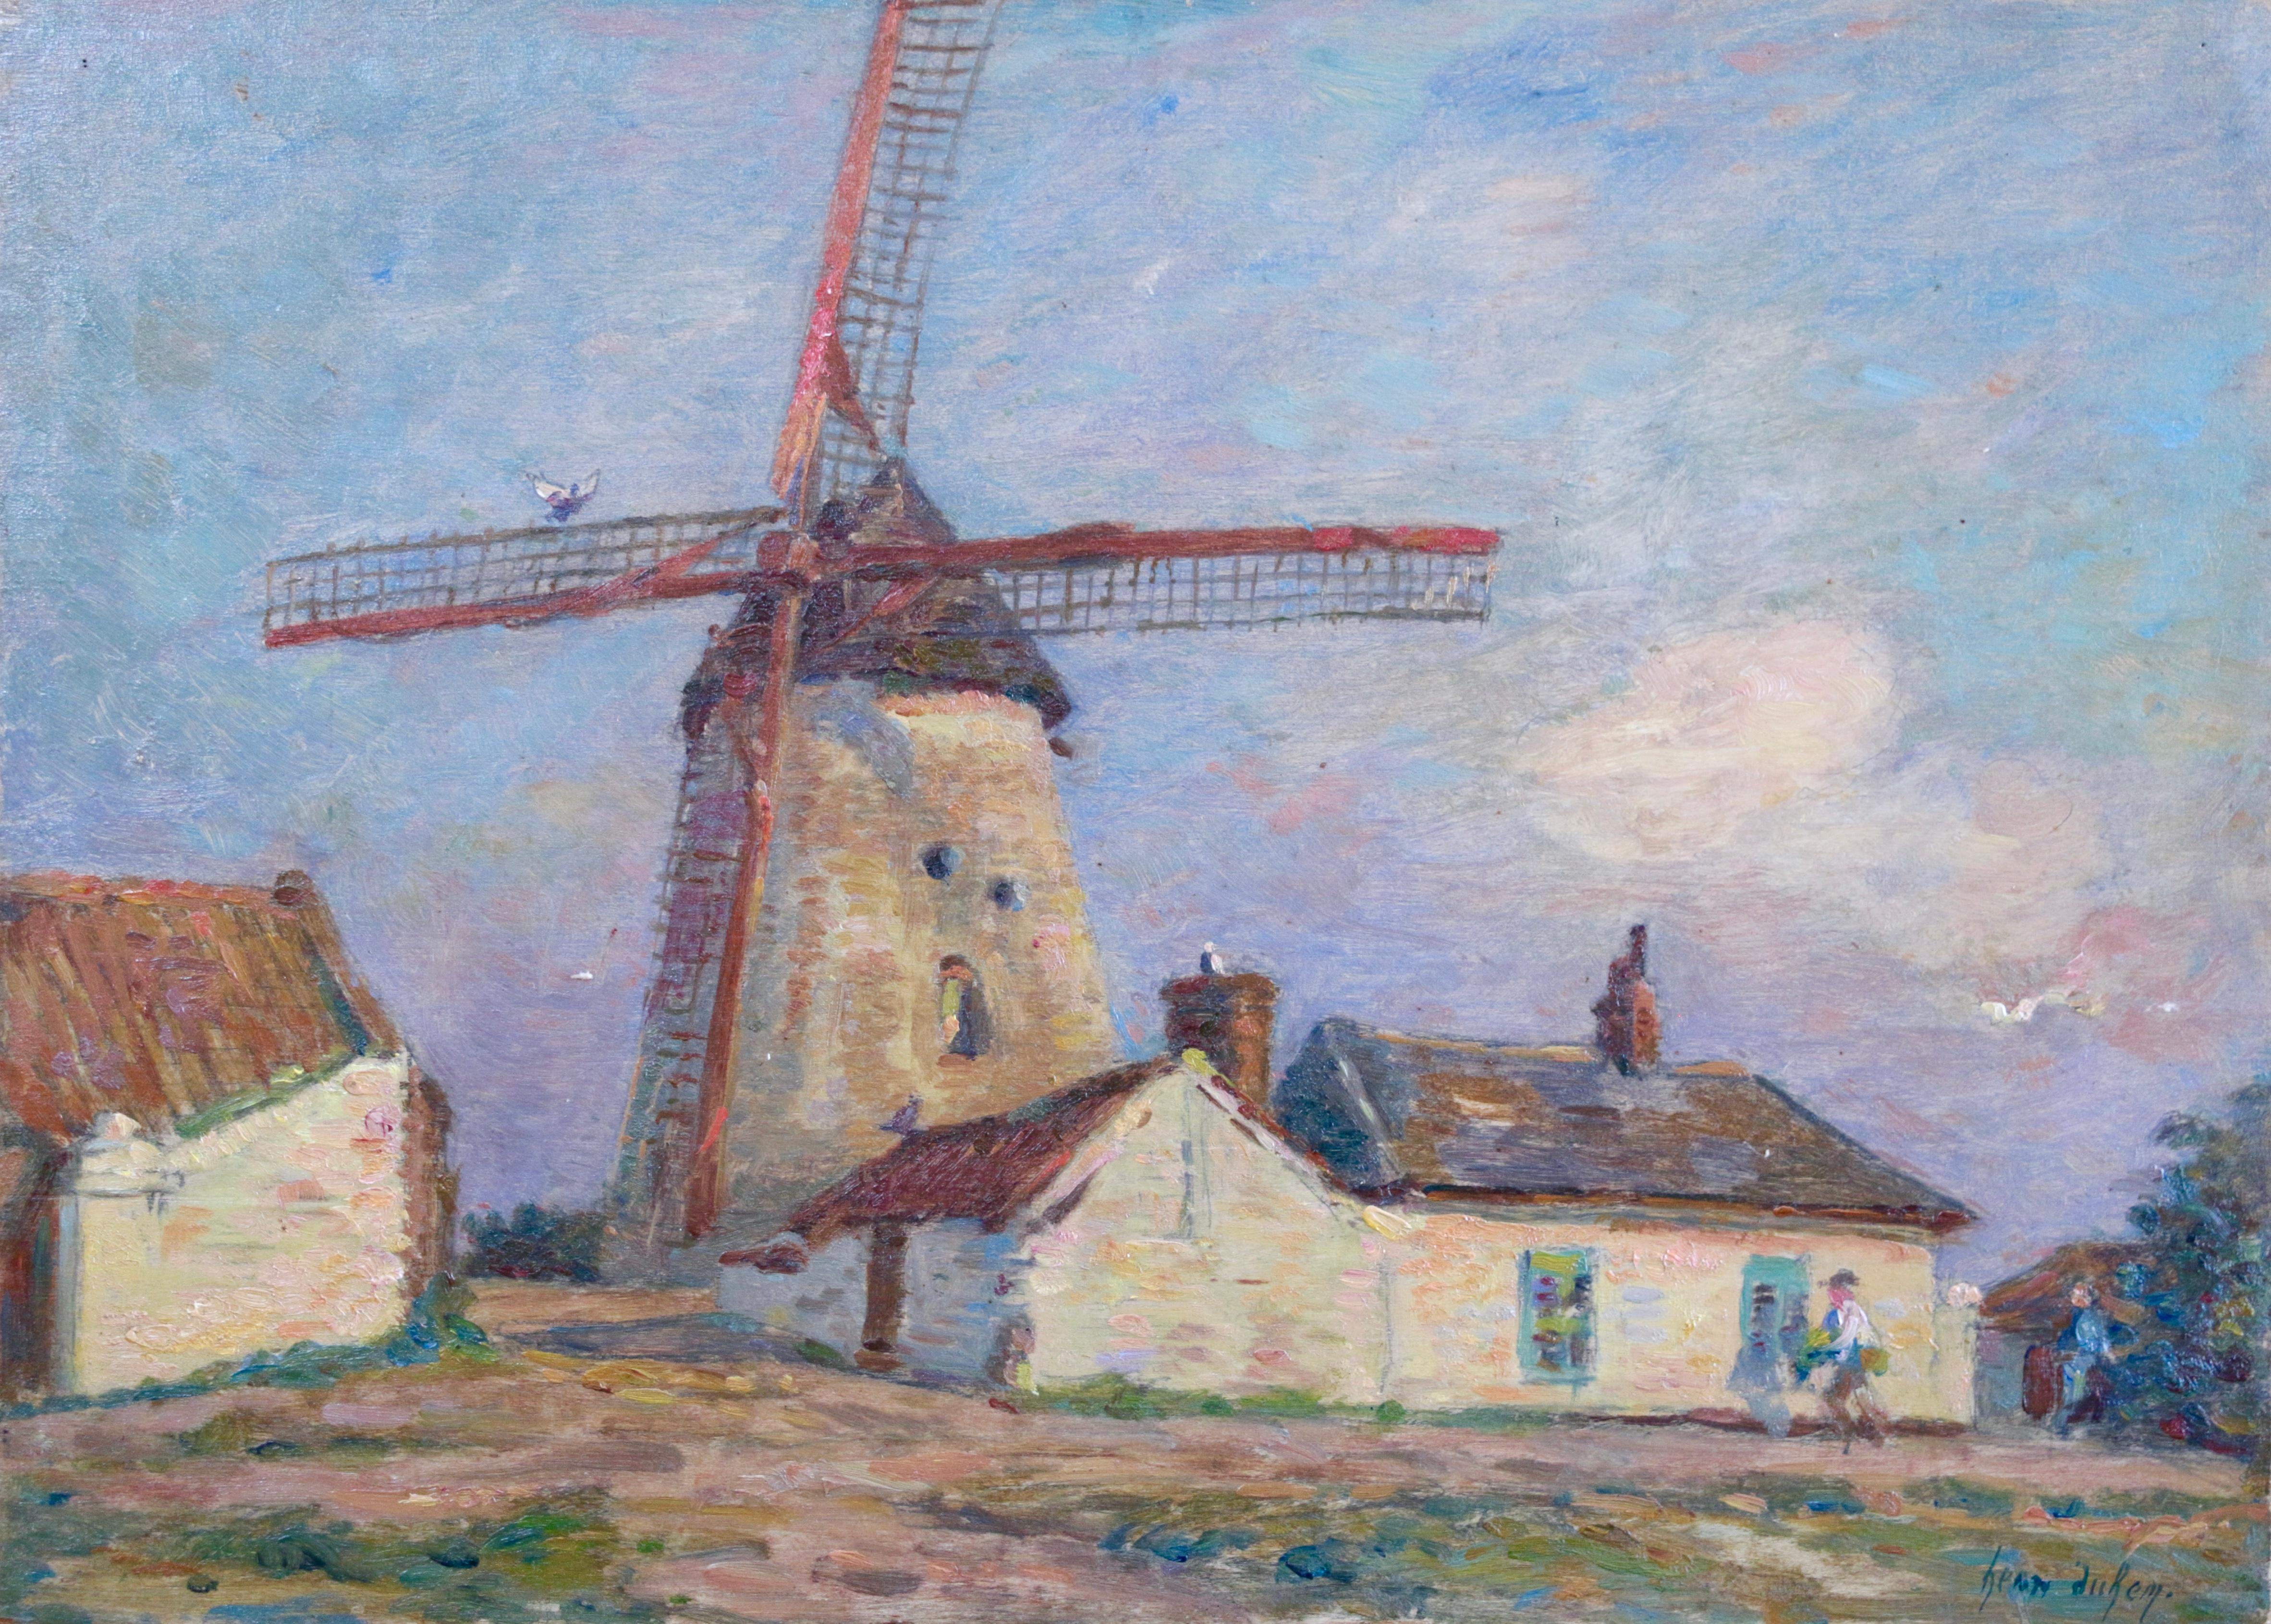 Henri Duhem Figurative Painting – La Ferme au Moulins - 19th Century Oil, Windmill on Farm Landscape by H Duhem